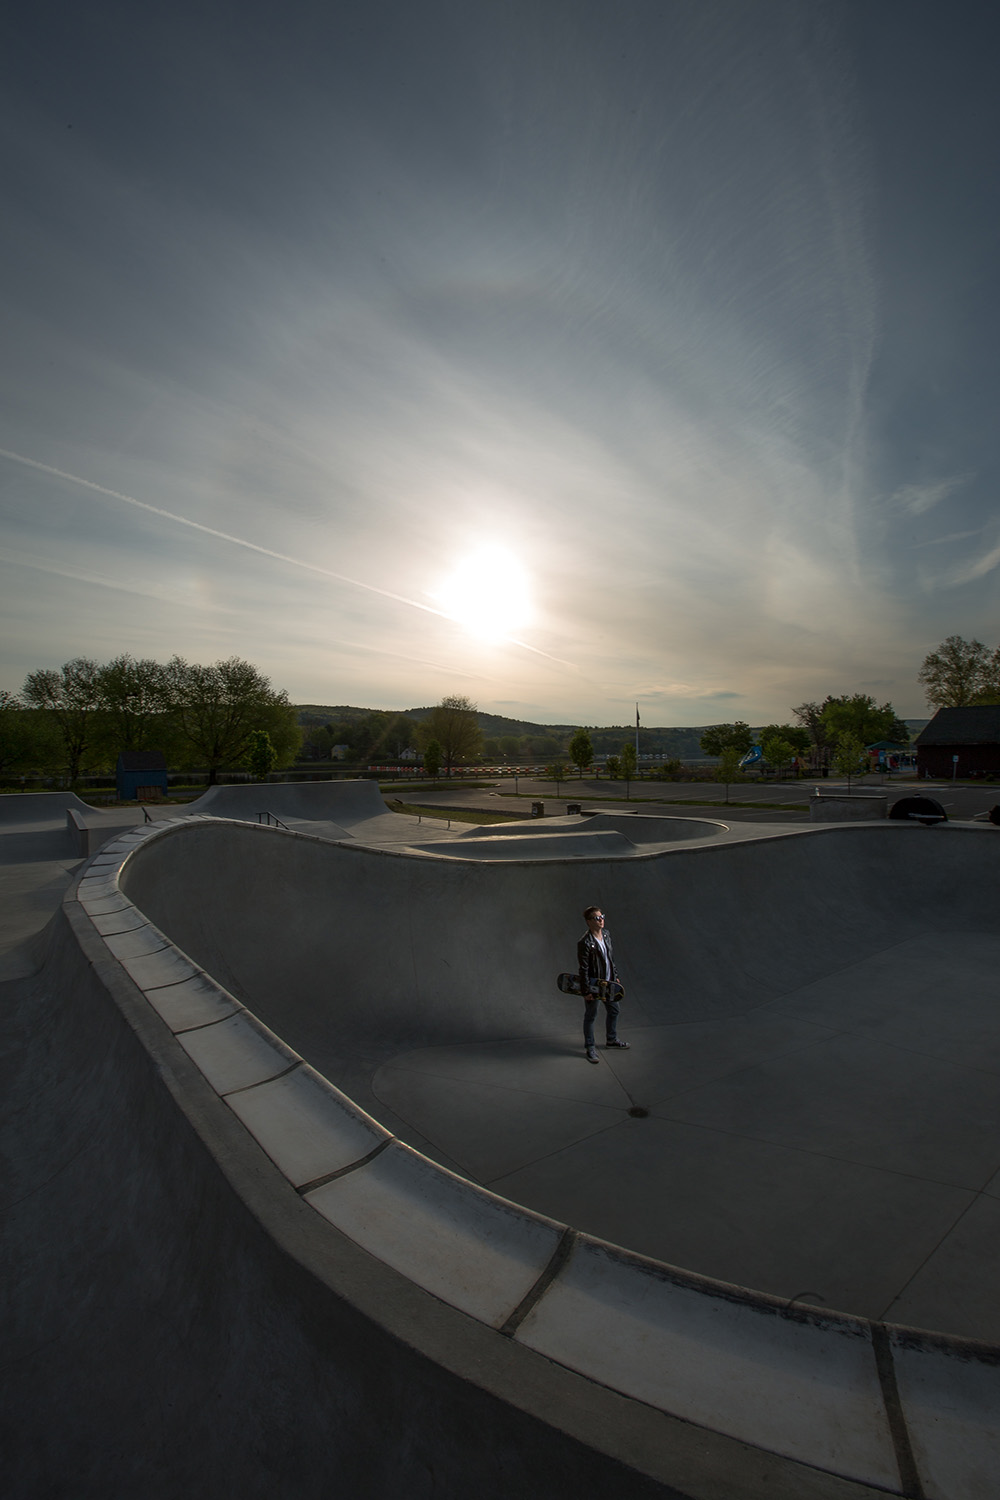 Kris Goerler at Turners Falls Skate Park at sunrise